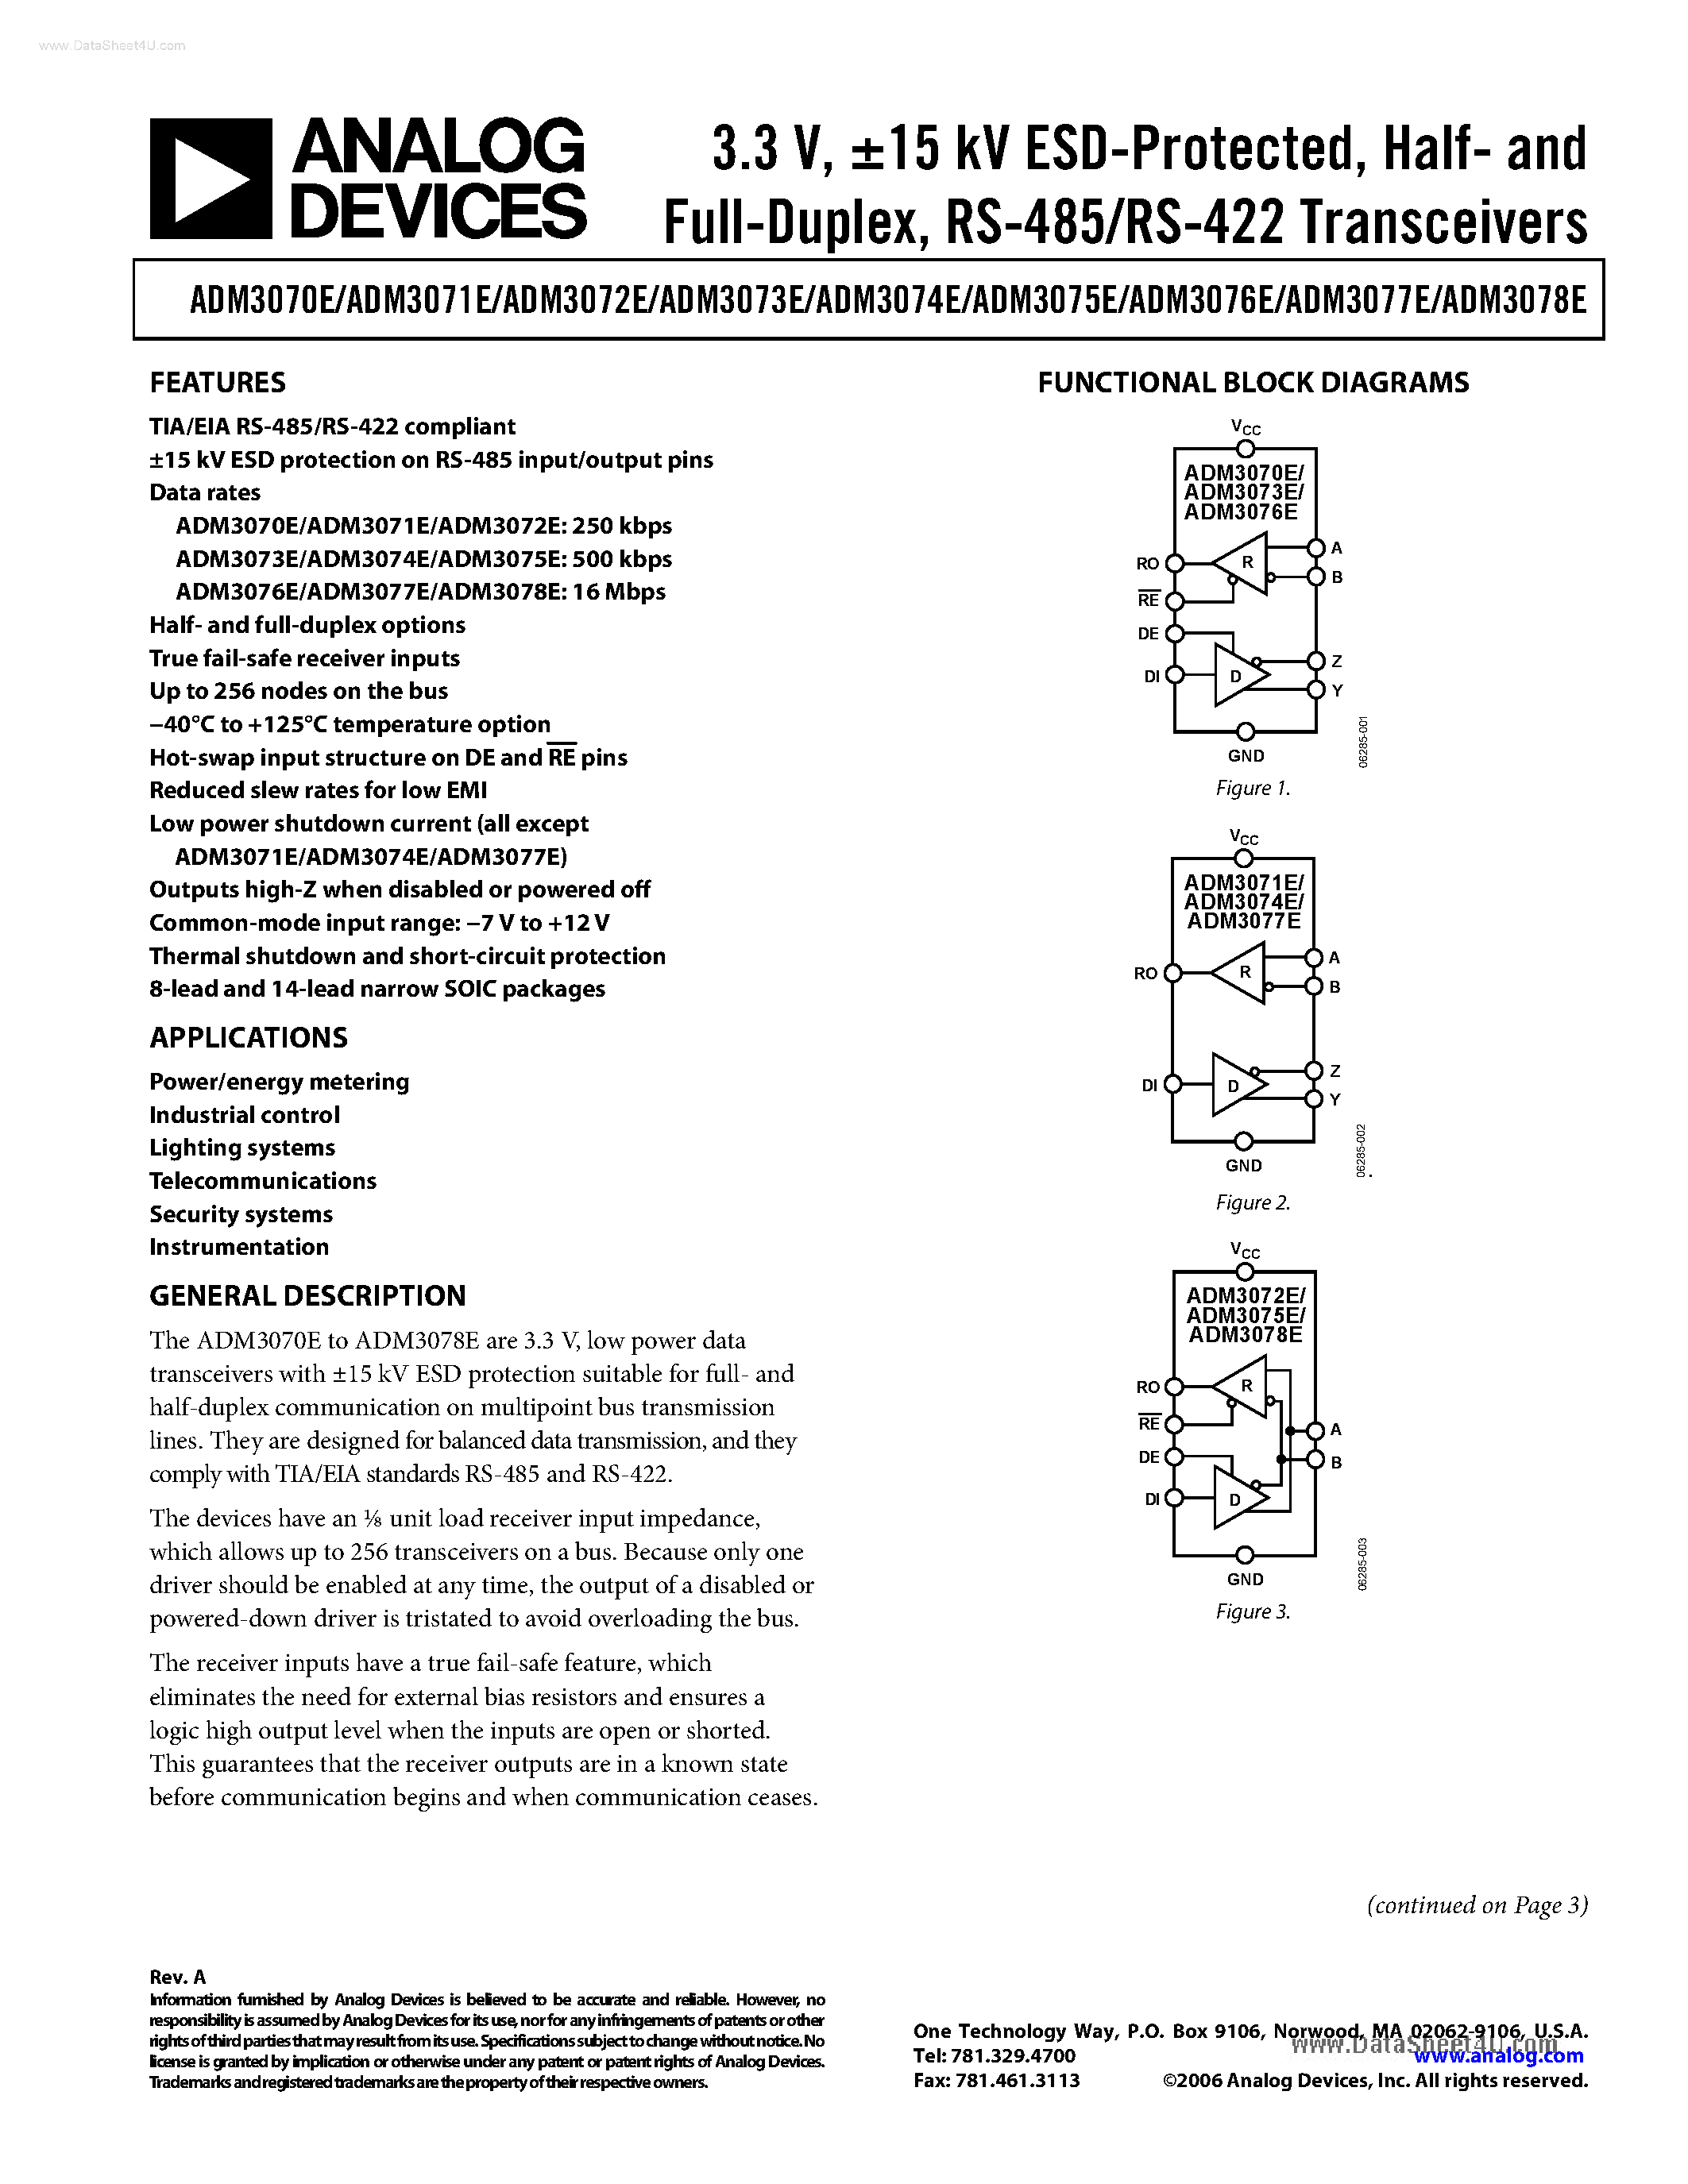 Даташит ADM3070E - (ADM3070E - ADM3078E) low power data transceivers страница 1